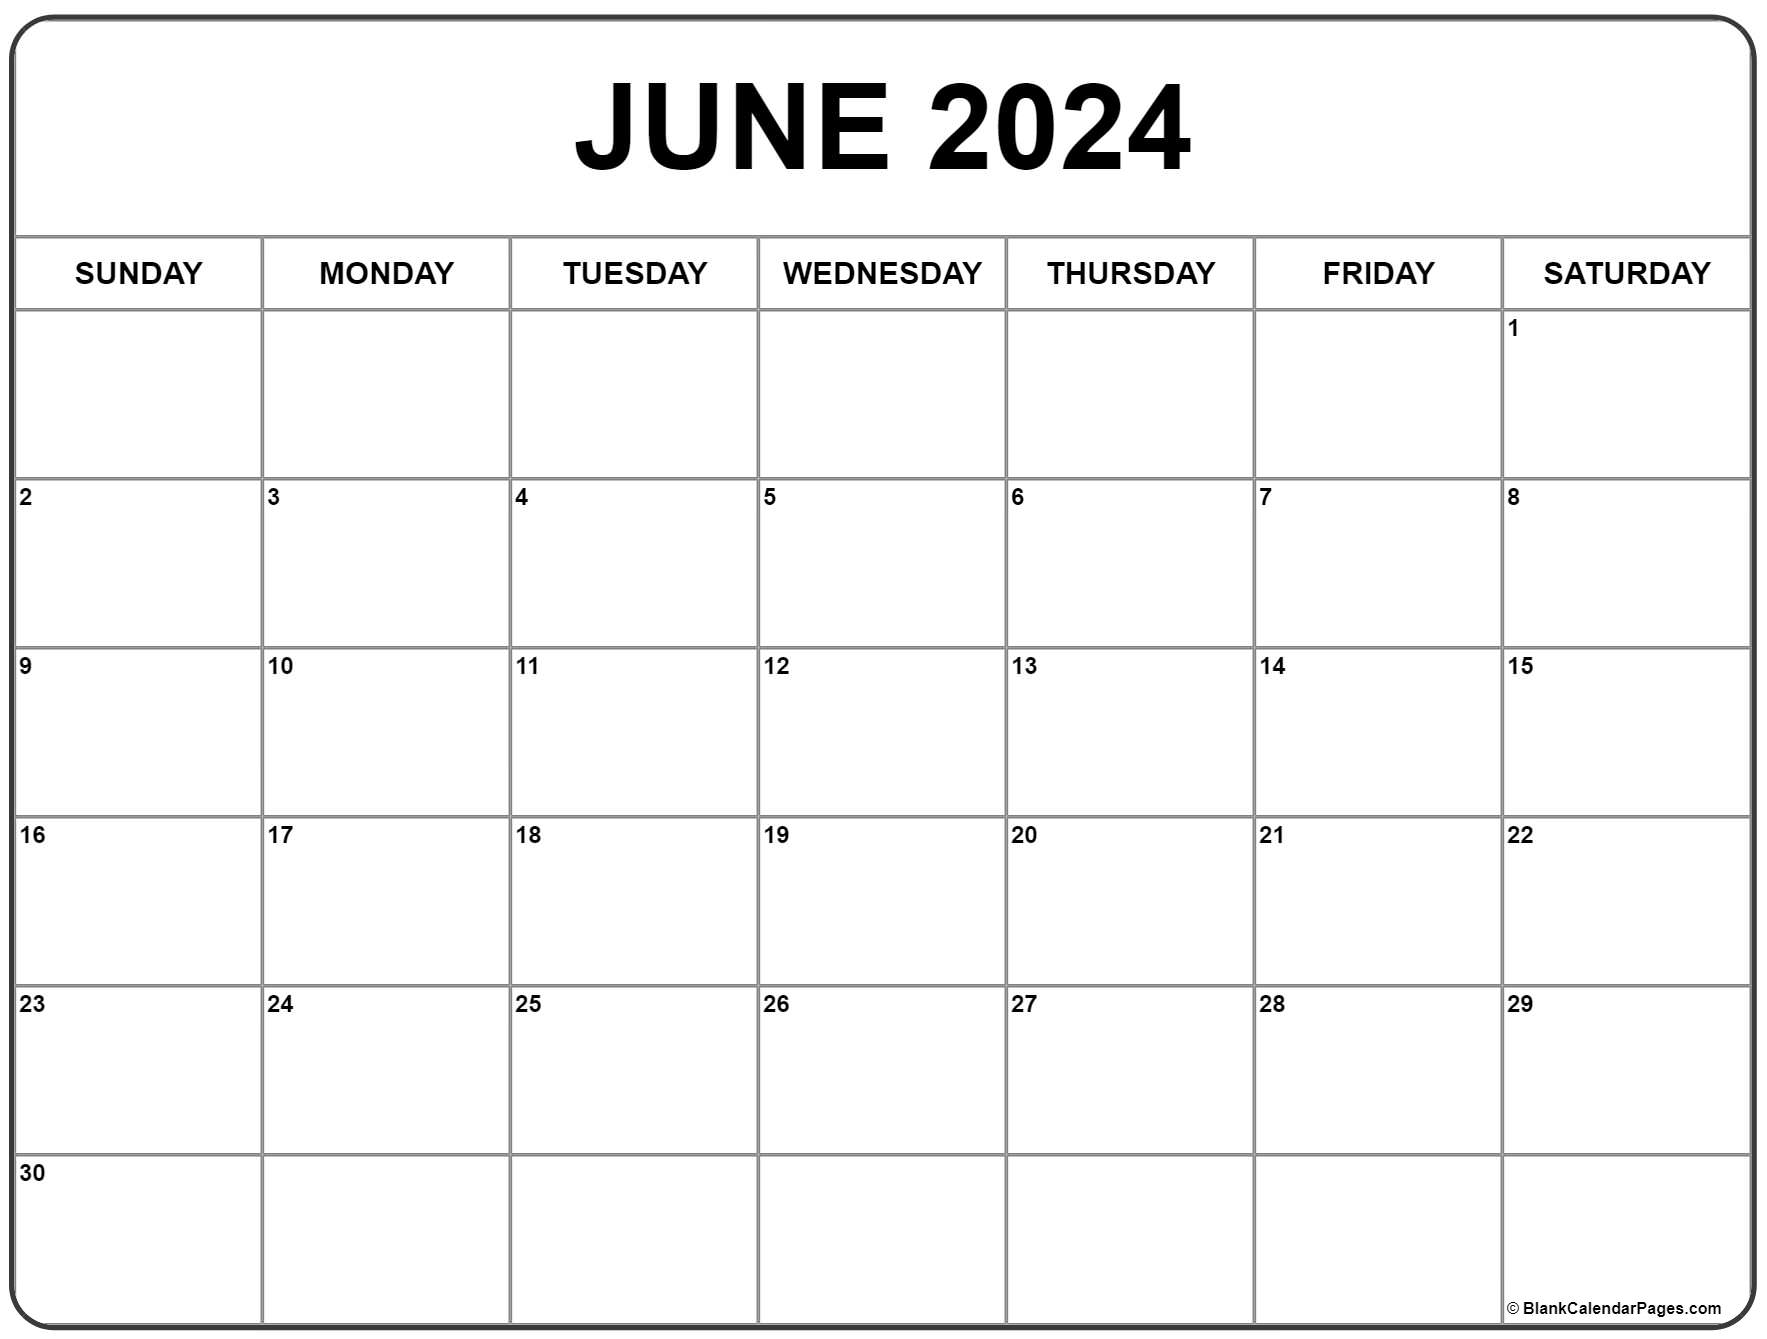 June 2024 Calendar | Free Printable Calendar for June Calendar Printable 2024 Free